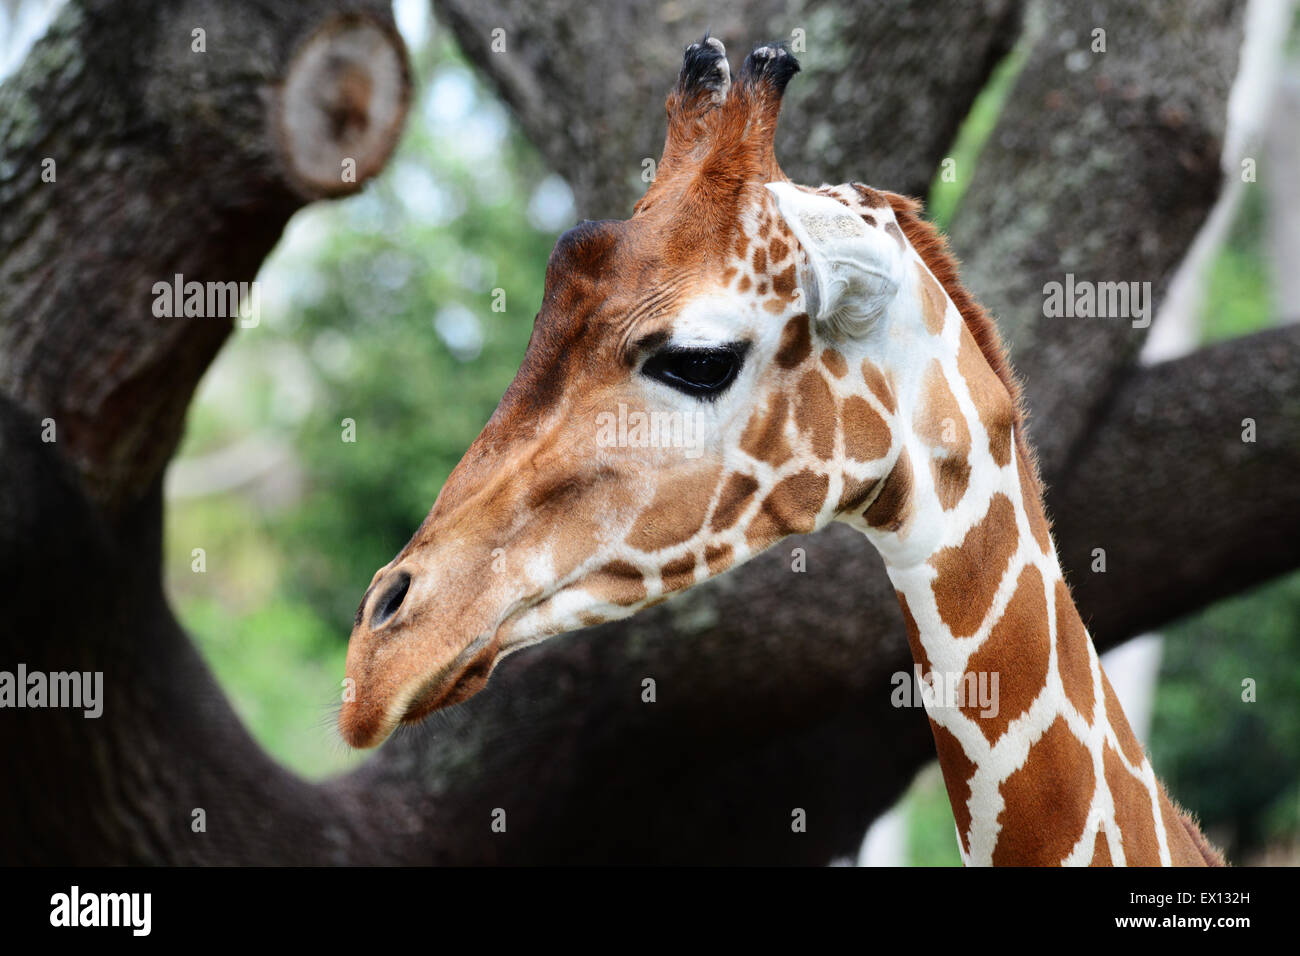 Profil d'une girafe dans un parc Banque D'Images